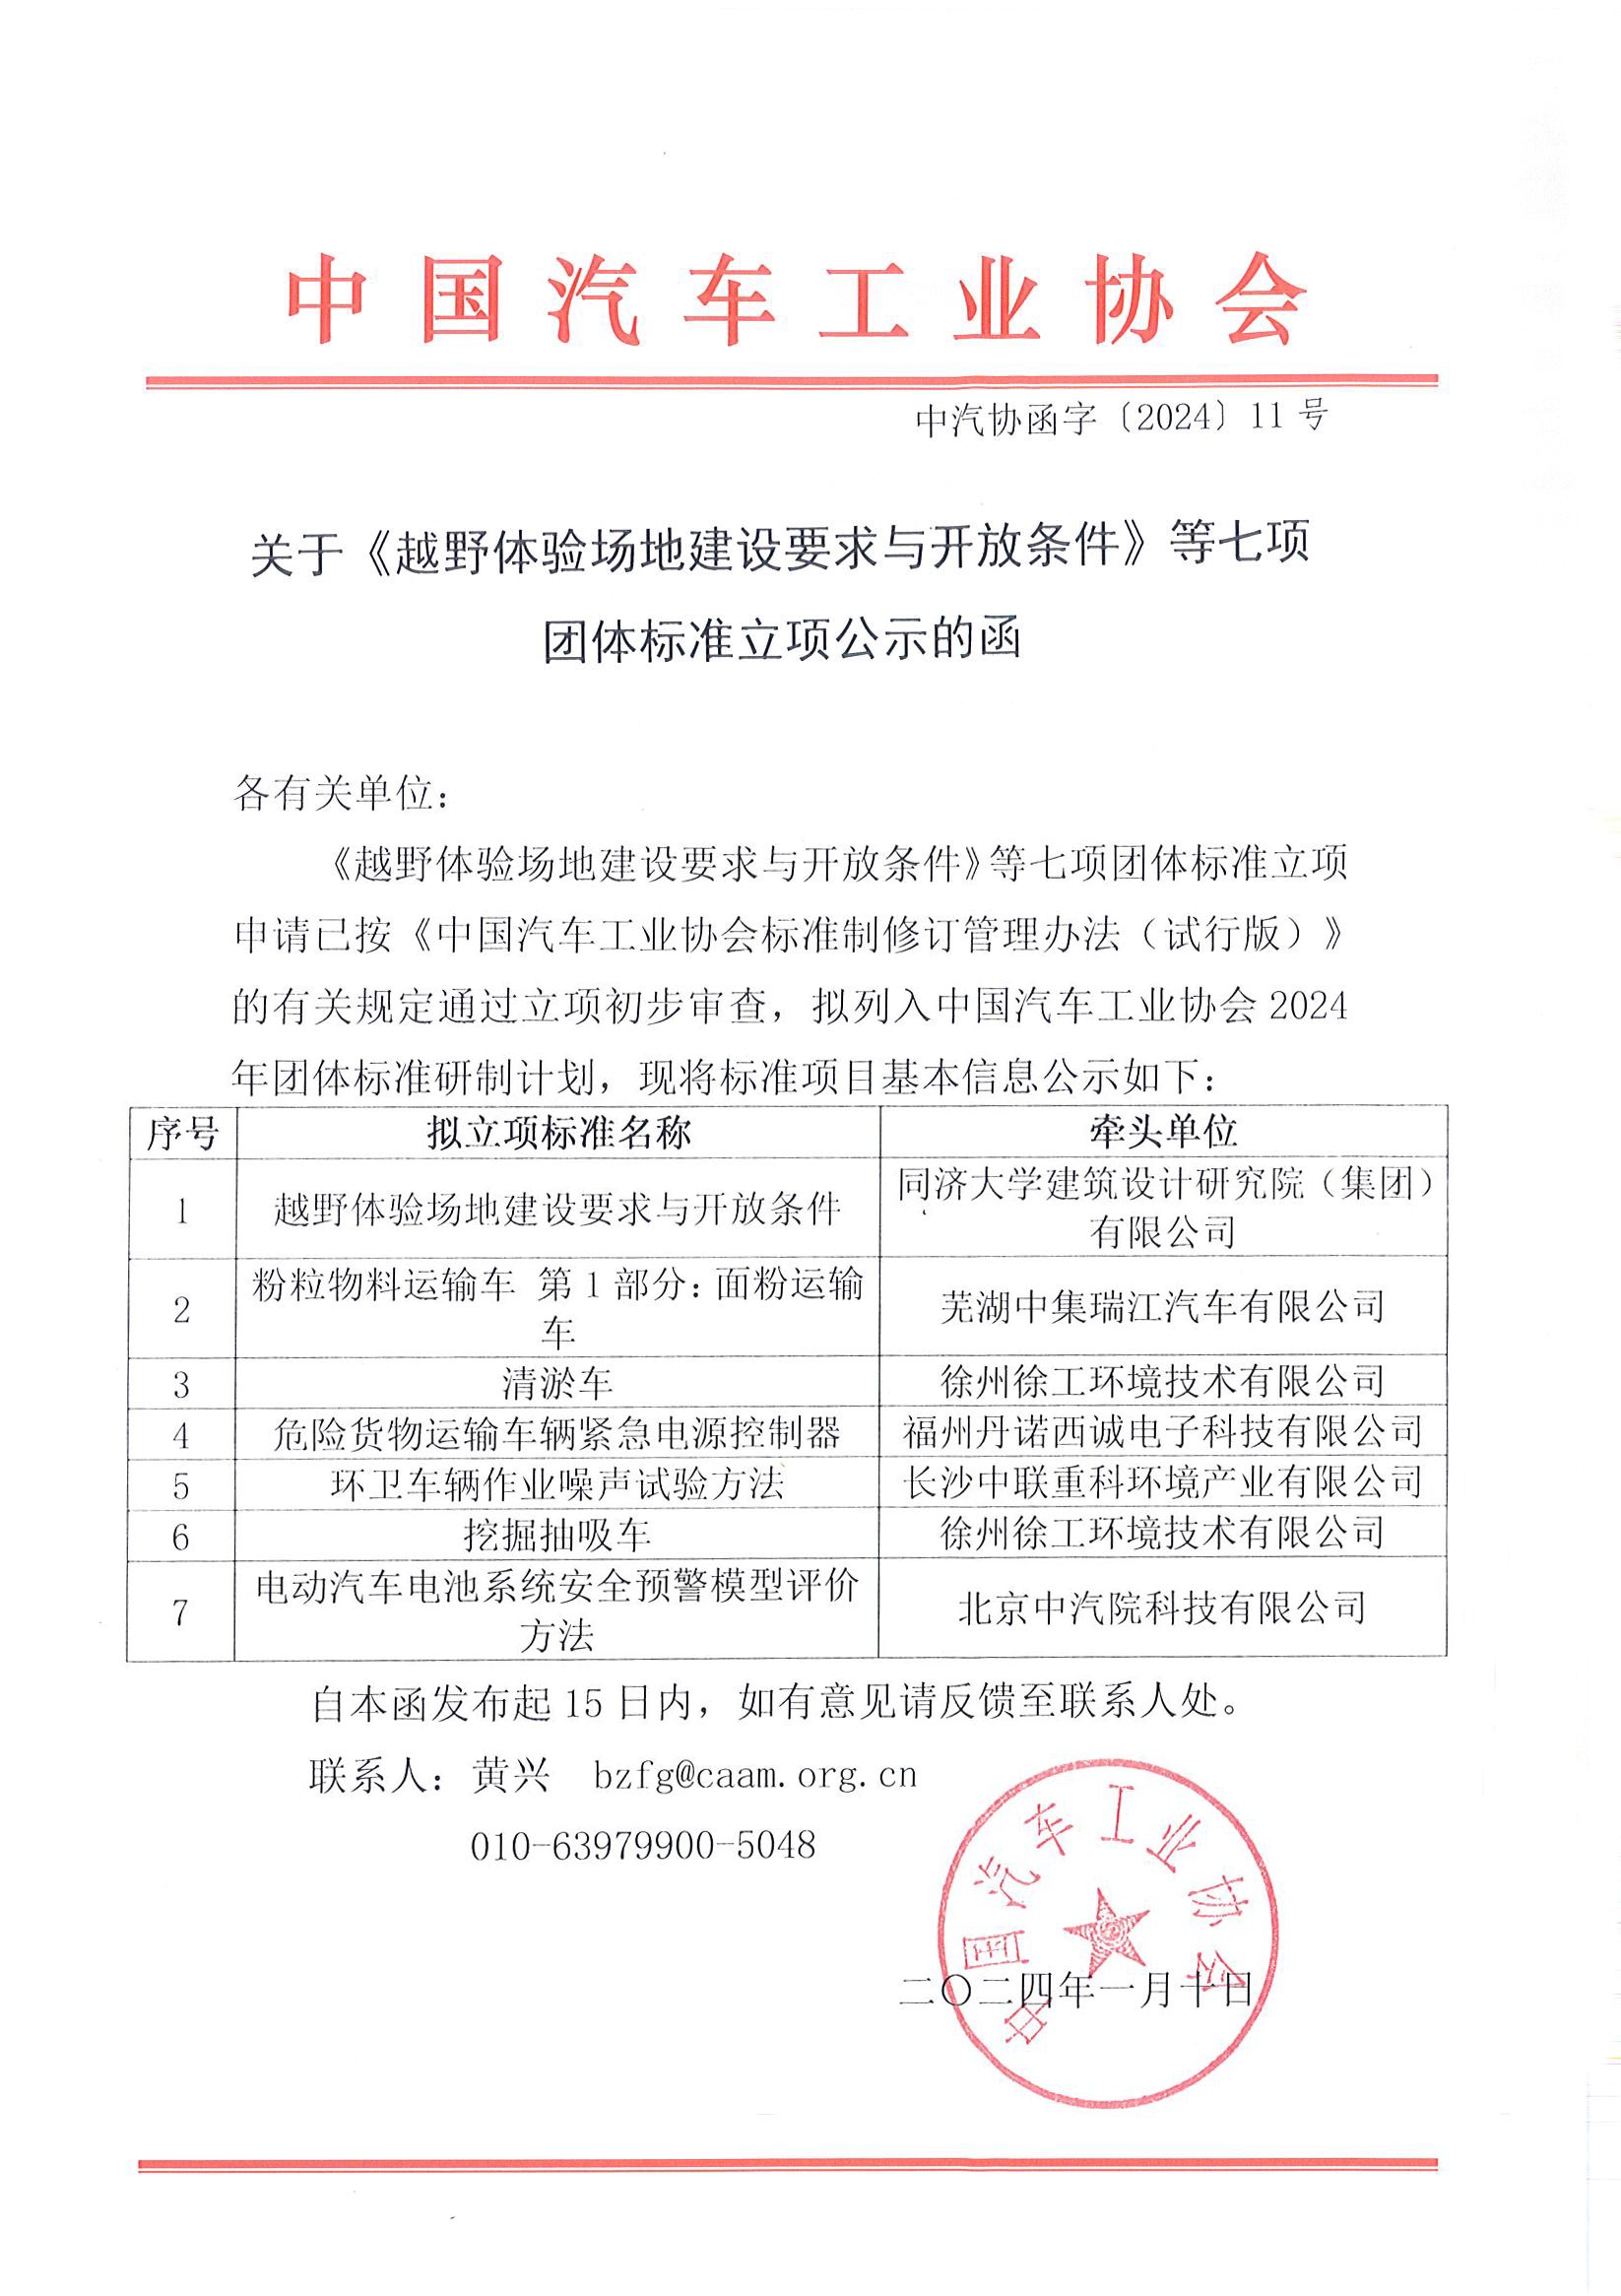 中国汽车工业协会关于《越野体验场地建设要求与开放条件》等七项团体标准立项公示的函。